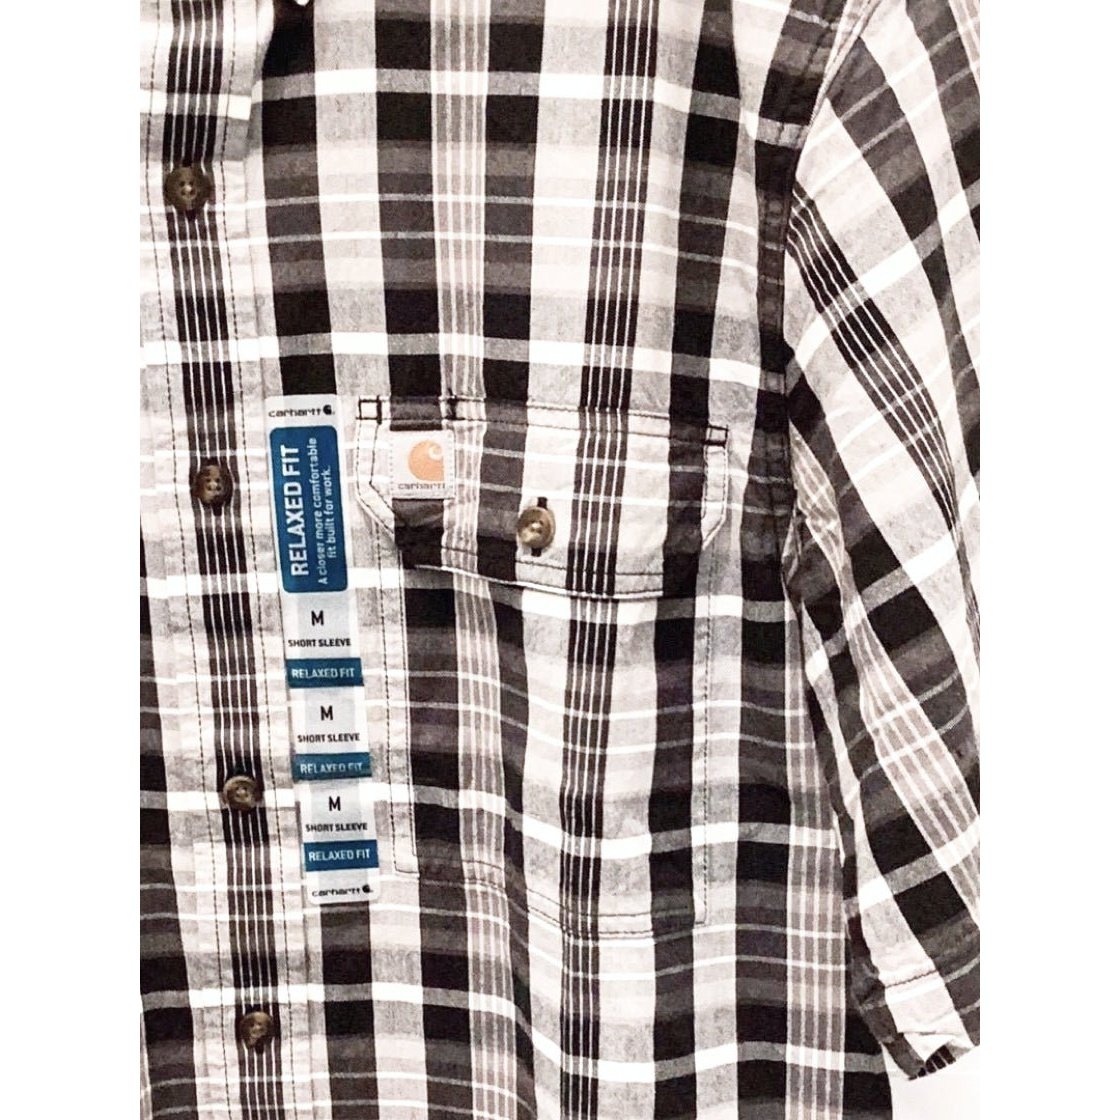 Carhartt Men’s Shirt Casual Short Sleeve Button Down 103006 - Carhartt